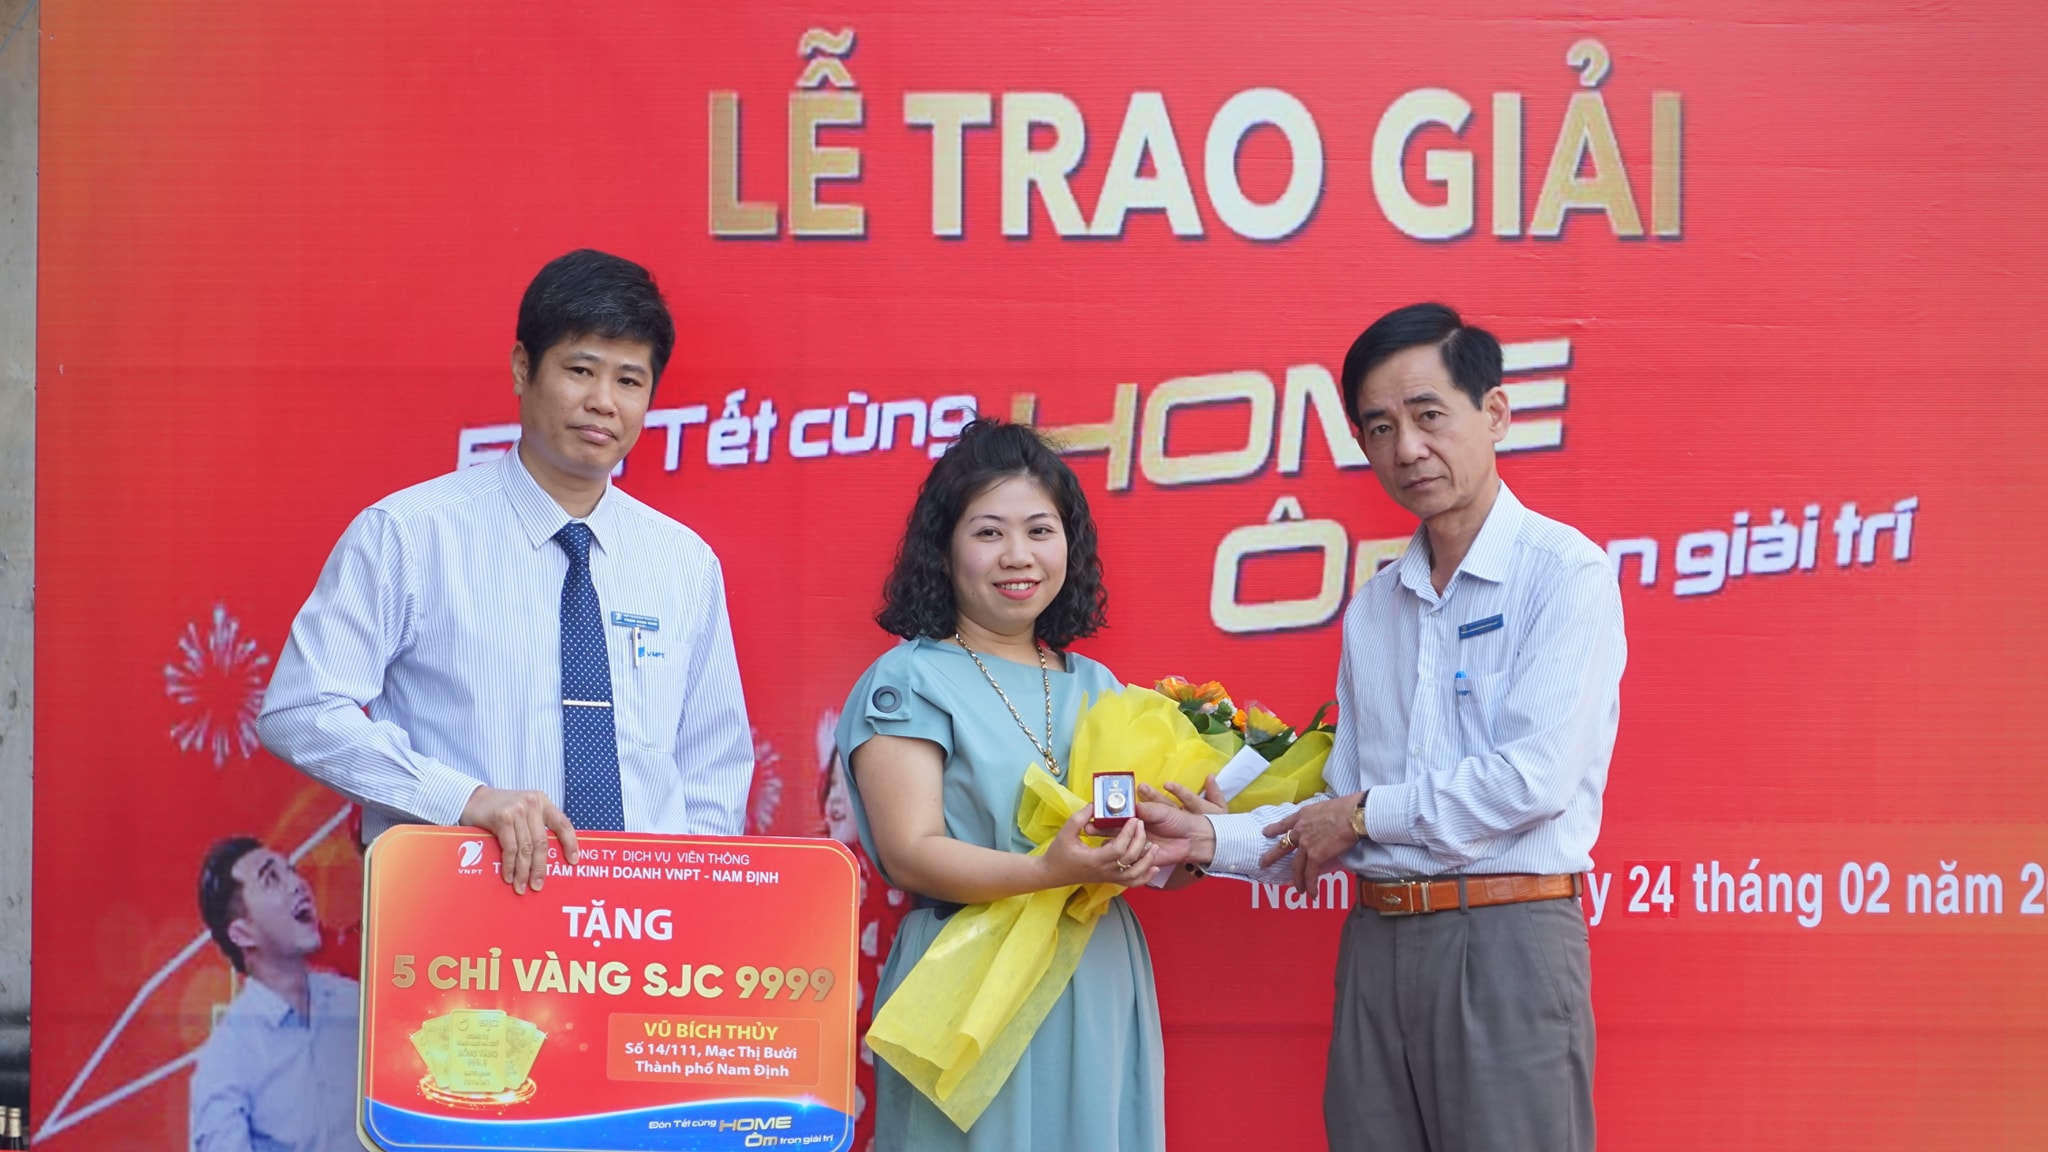 Trao giải cho khách hàng trúng Vàng tại thành phố Nam Định